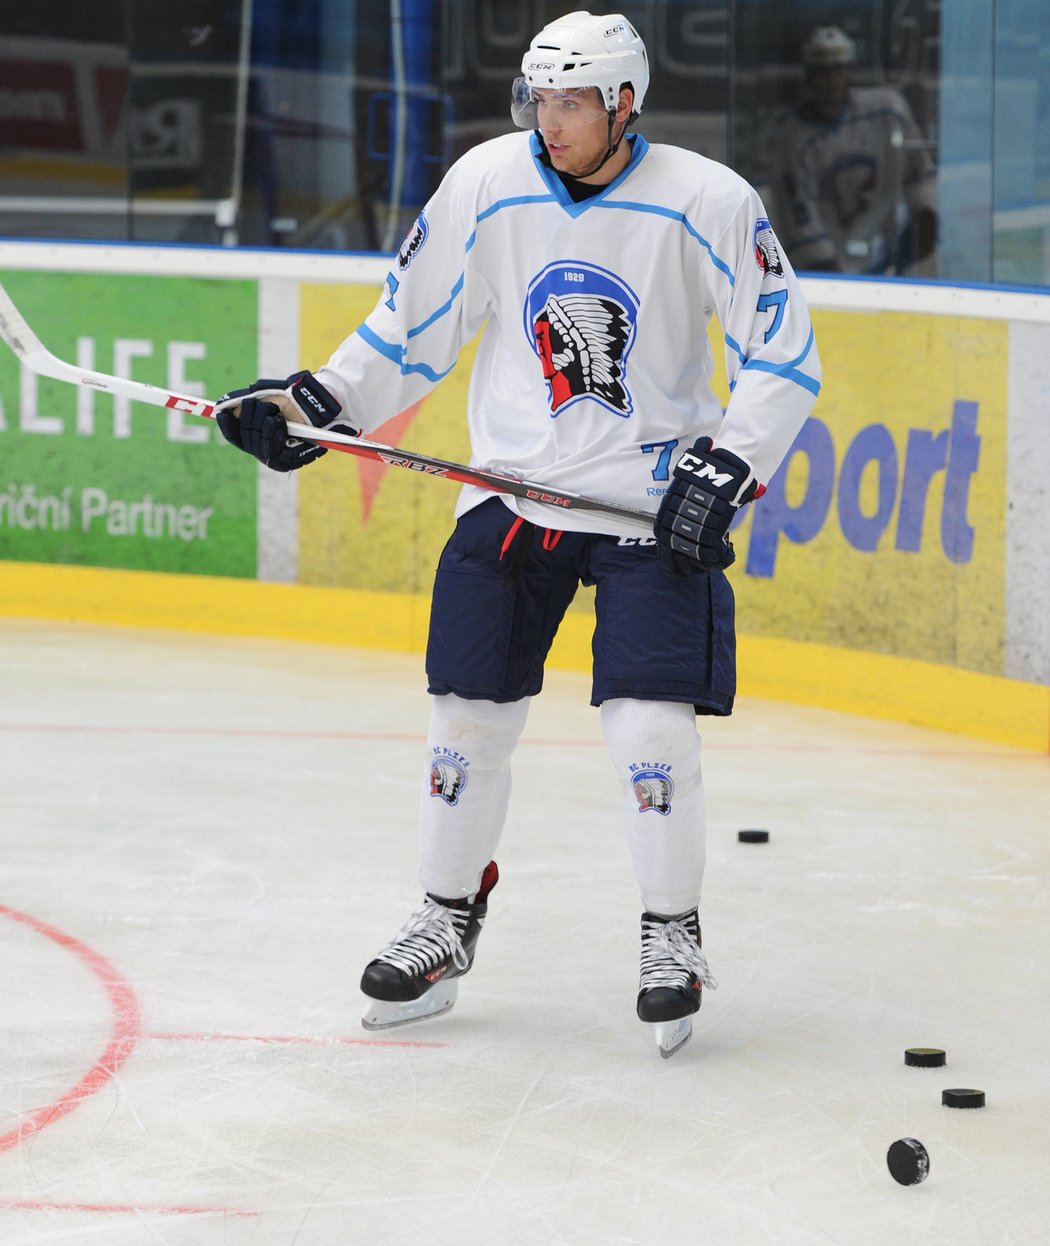 Mladý hokejový bek Vojtěch Mozík byl u toho, když v minulé sezoně vybojoval v Plzni první historický titul. A má za sebou i první oťukávání se zámořskou NHL, byl v kempu NY Rangers